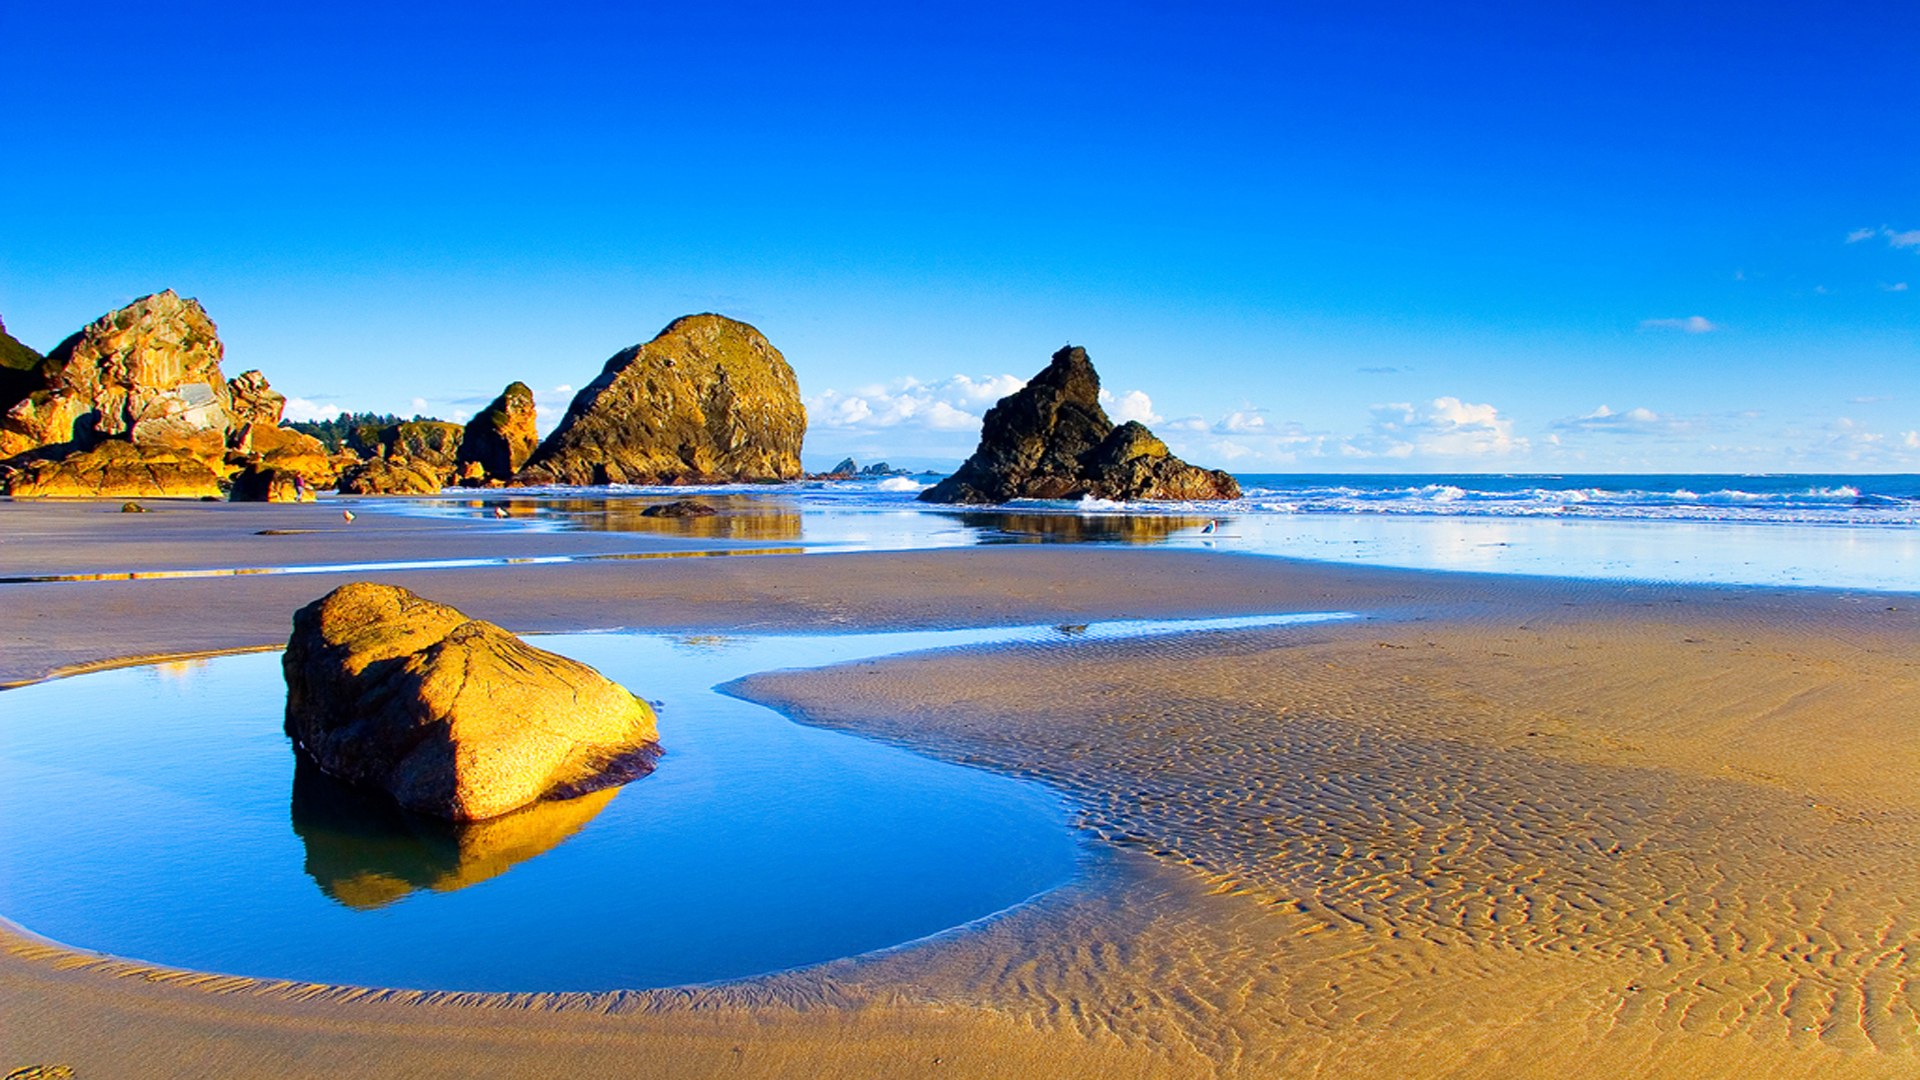 Скачать обои бесплатно Пляж, Синий, Земля/природа картинка на рабочий стол ПК